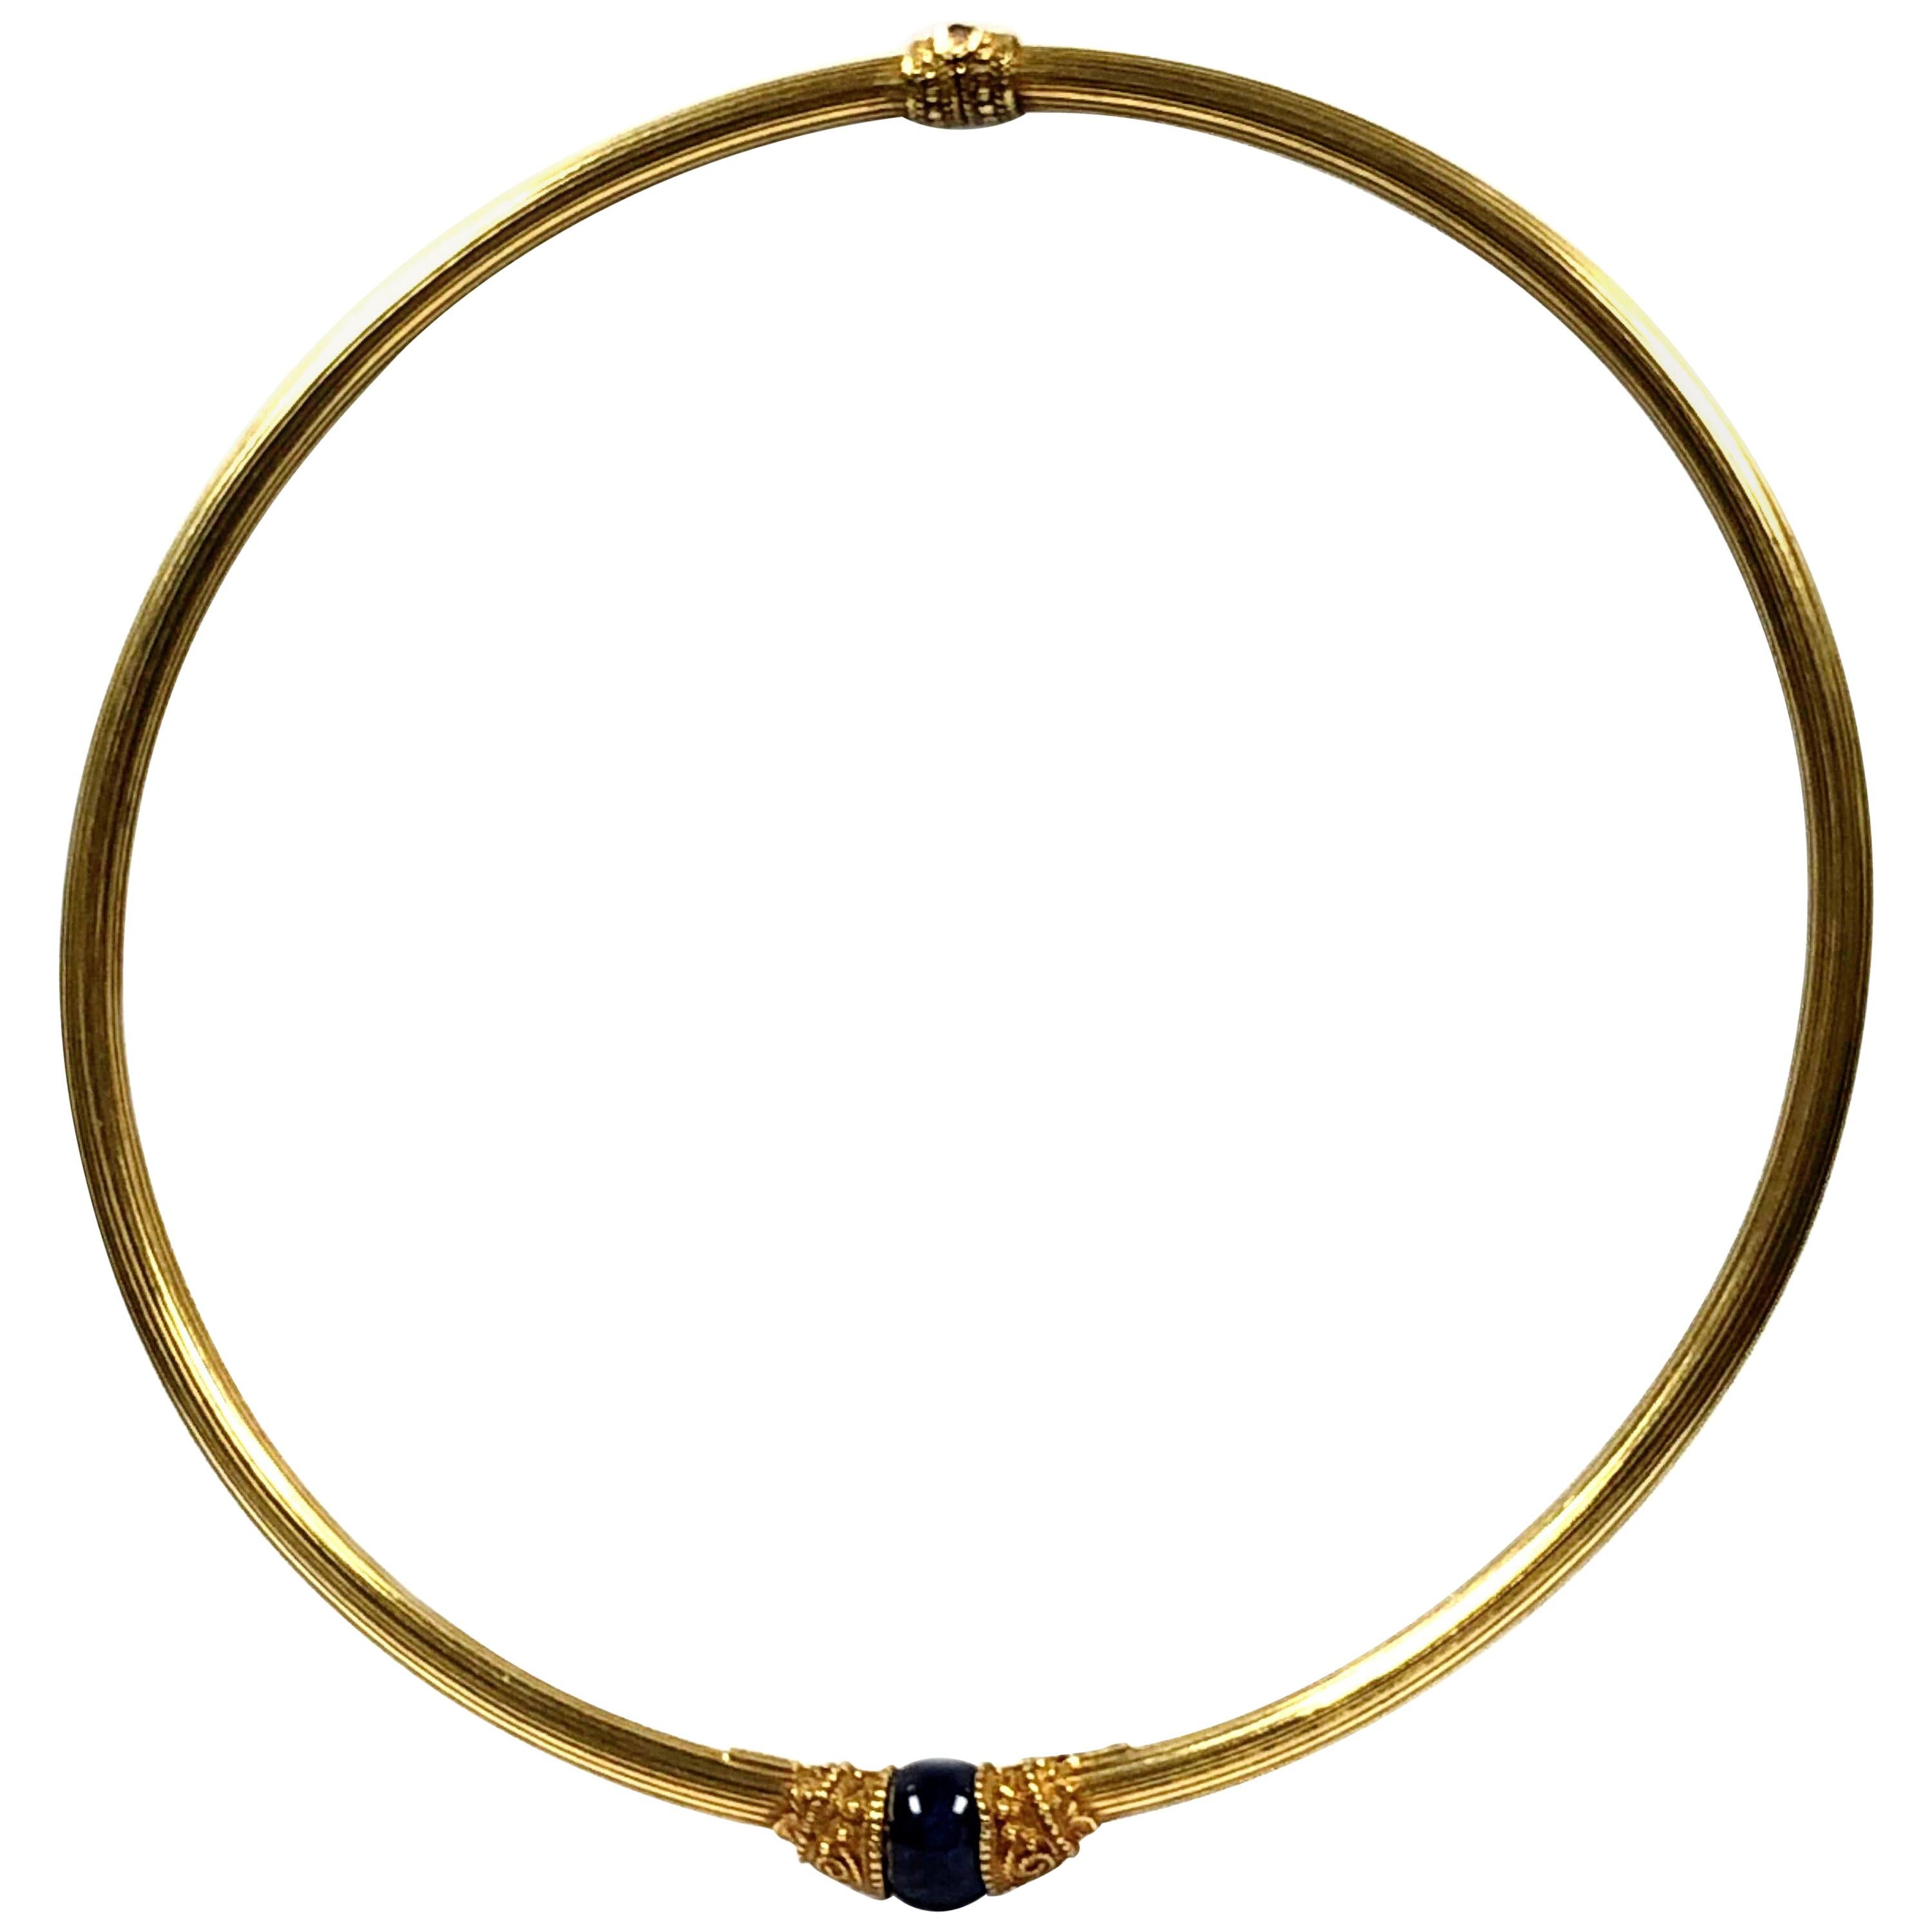 Lalaounis 18 Karat Yellow Gold and Lapis Collar Necklace